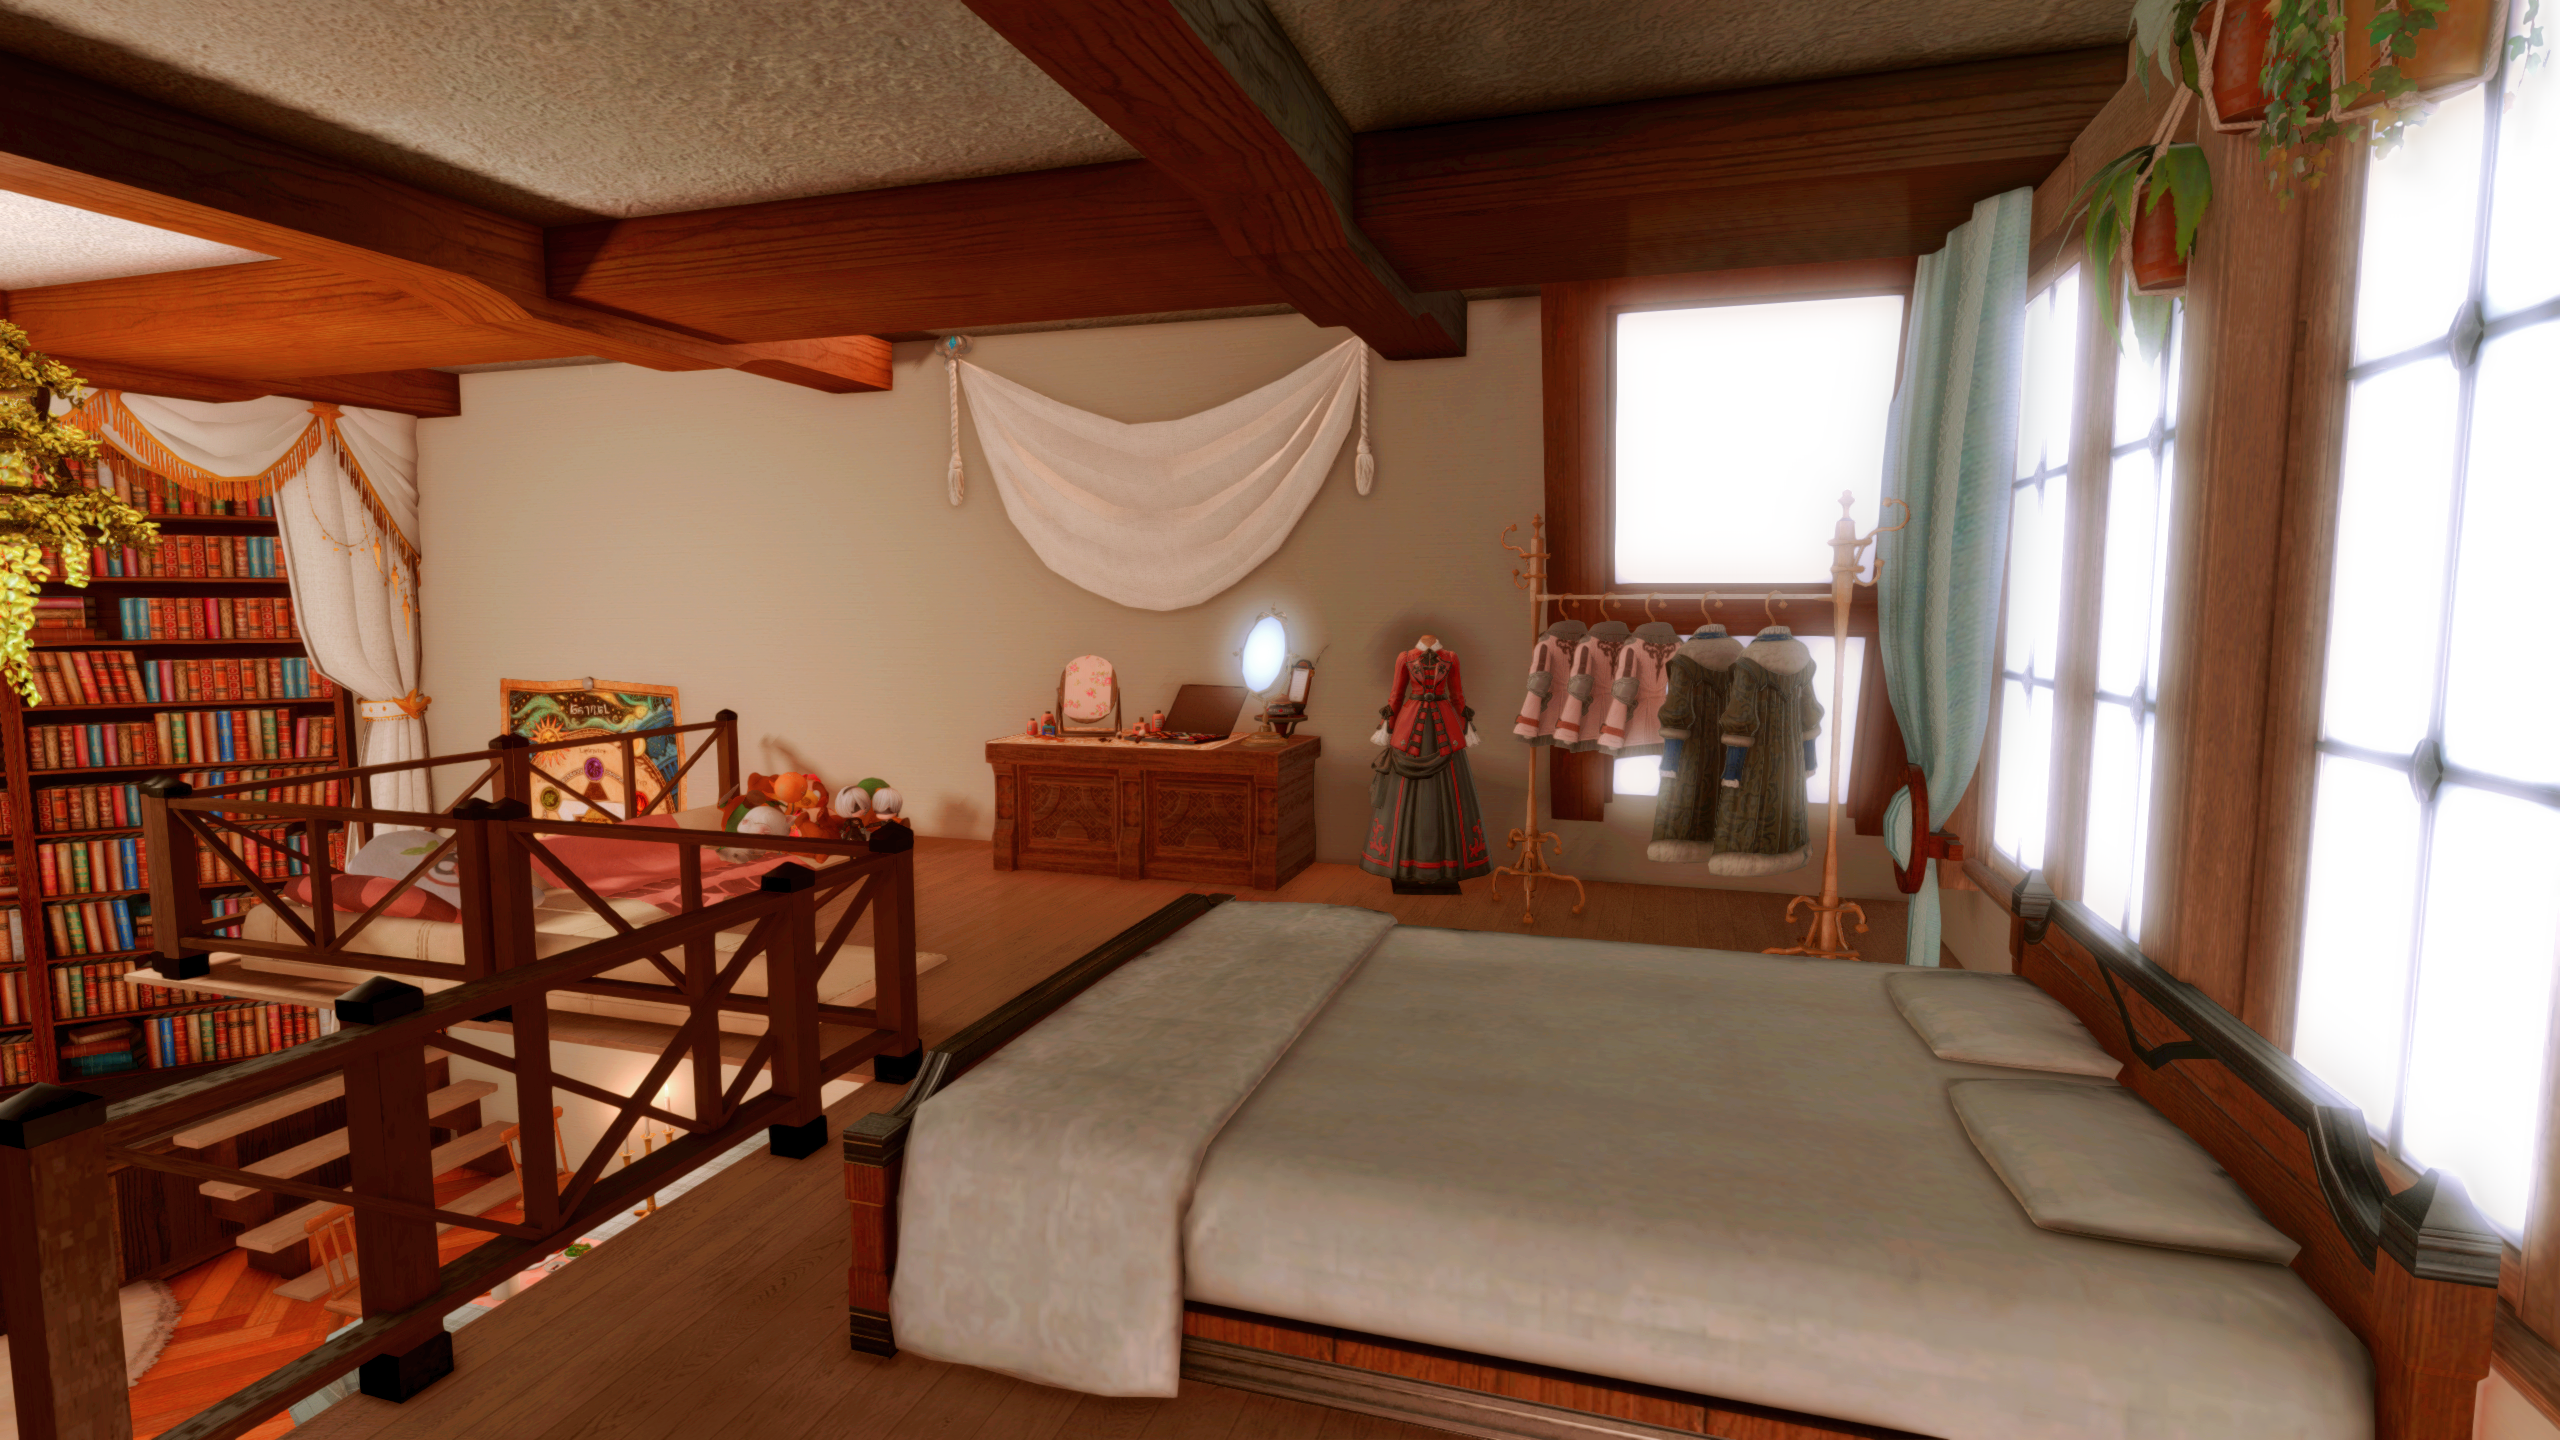 Logement Final Fantasy 14, un espace loft avec un lit, des tiroirs et un canapé